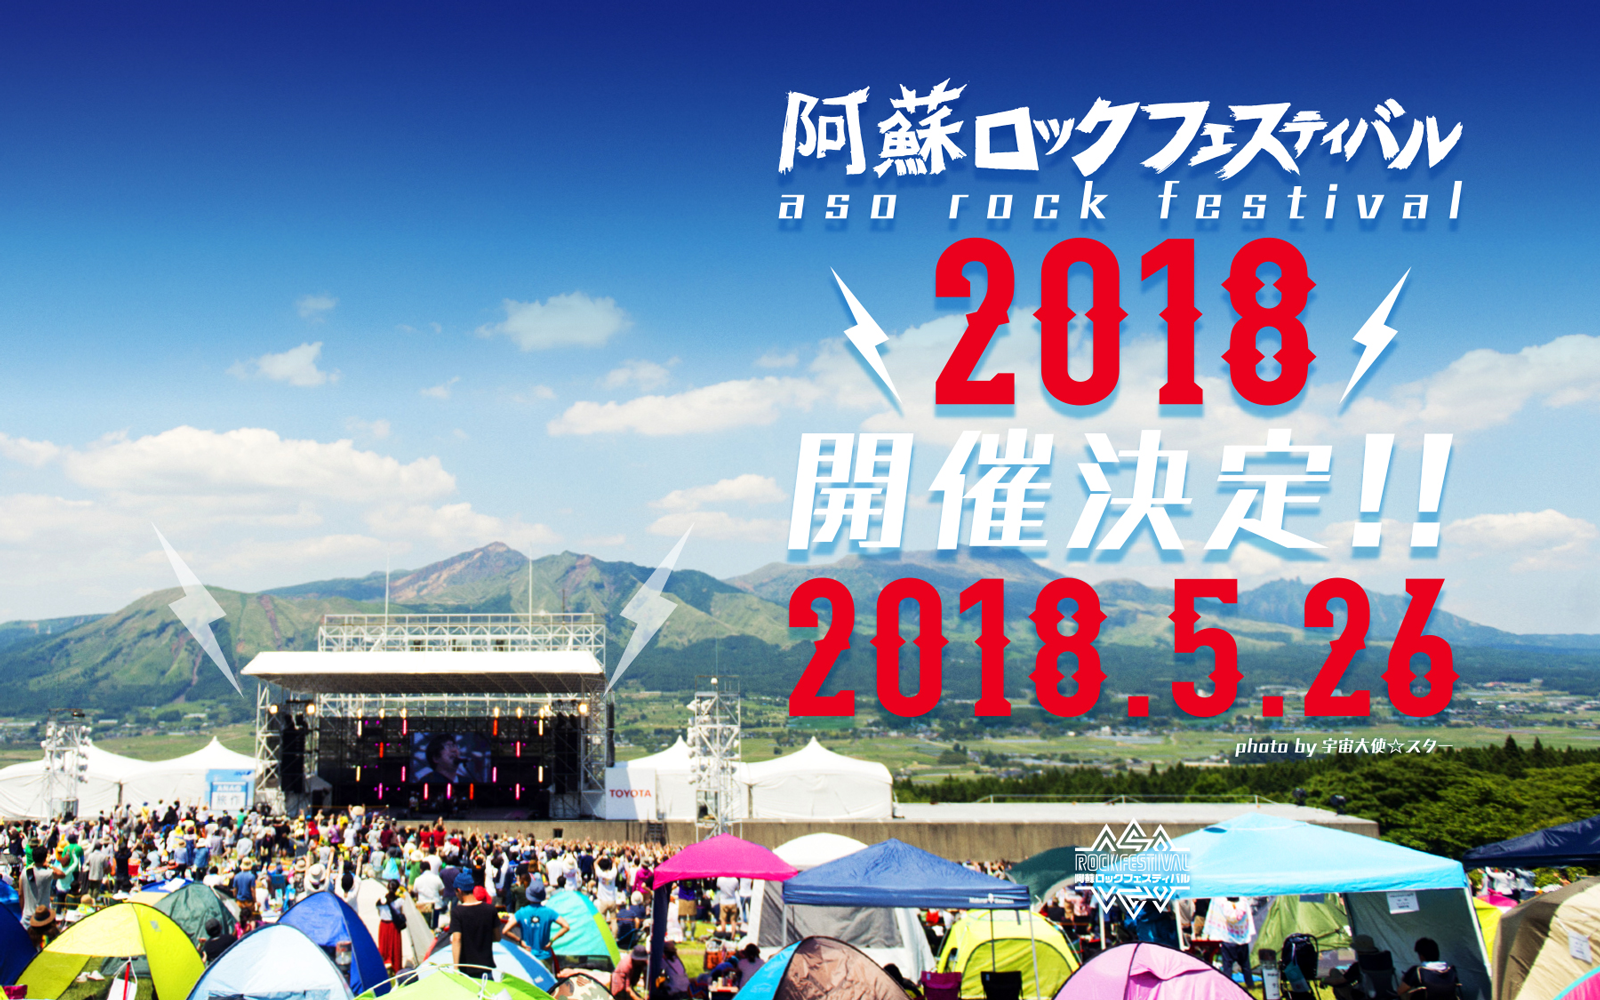 阿蘇ロックフェスティバル2018